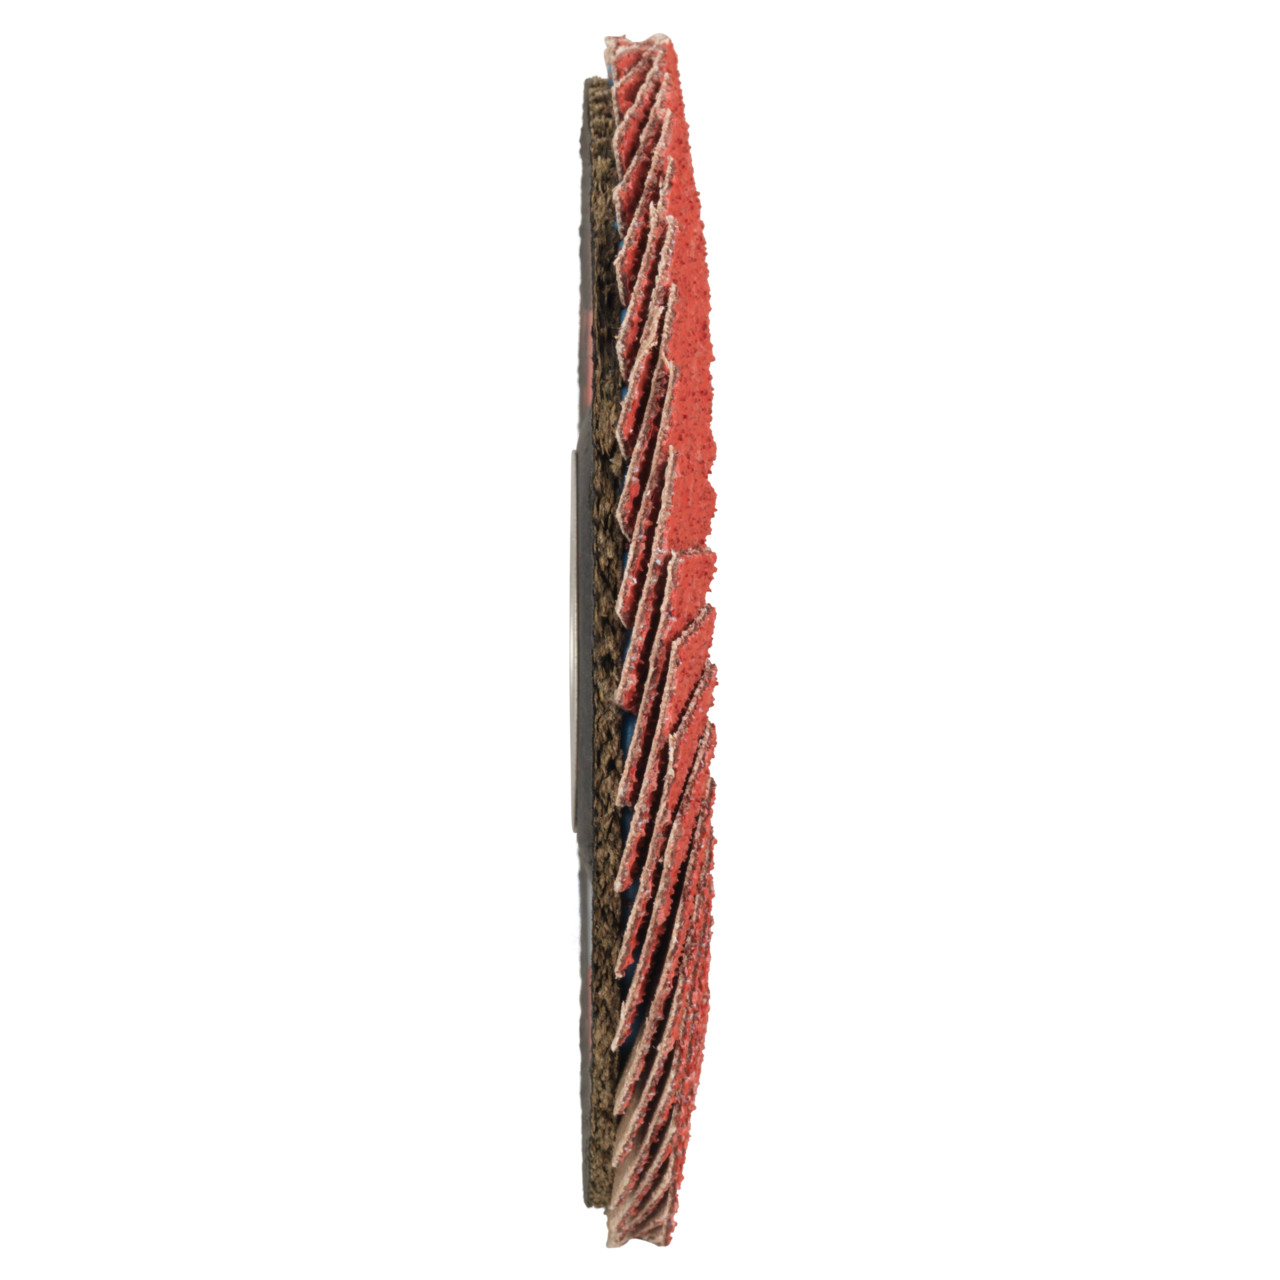 Rondella dentata Tyrolit DxH 178x22,23 CERAMICA per acciaio inox, P40, forma: 27A - design a gomito (corpo portante in fibra di vetro), Art. 34166681